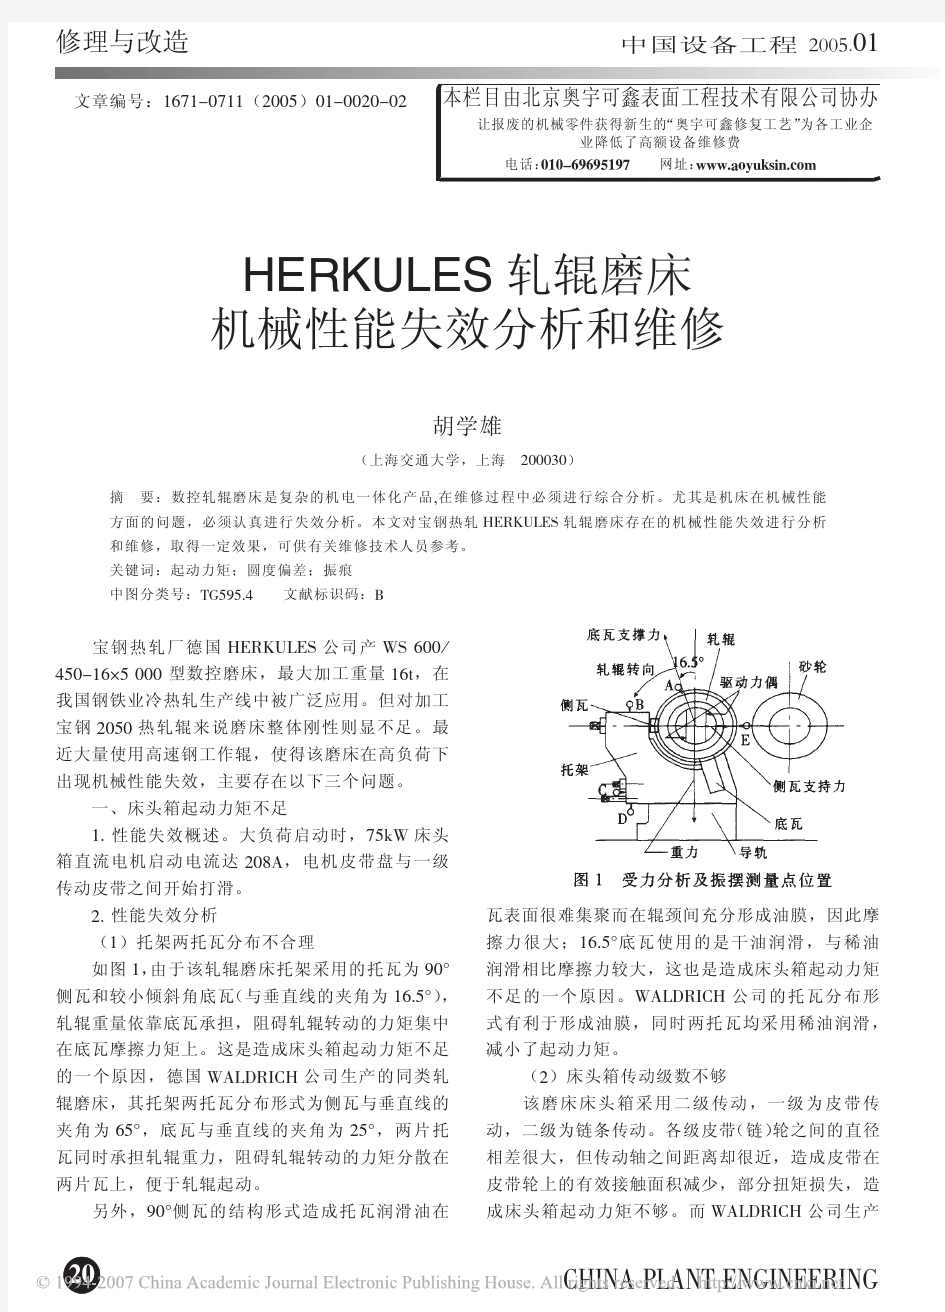 HERKULES轧辊磨床机械性能失效分析和维修